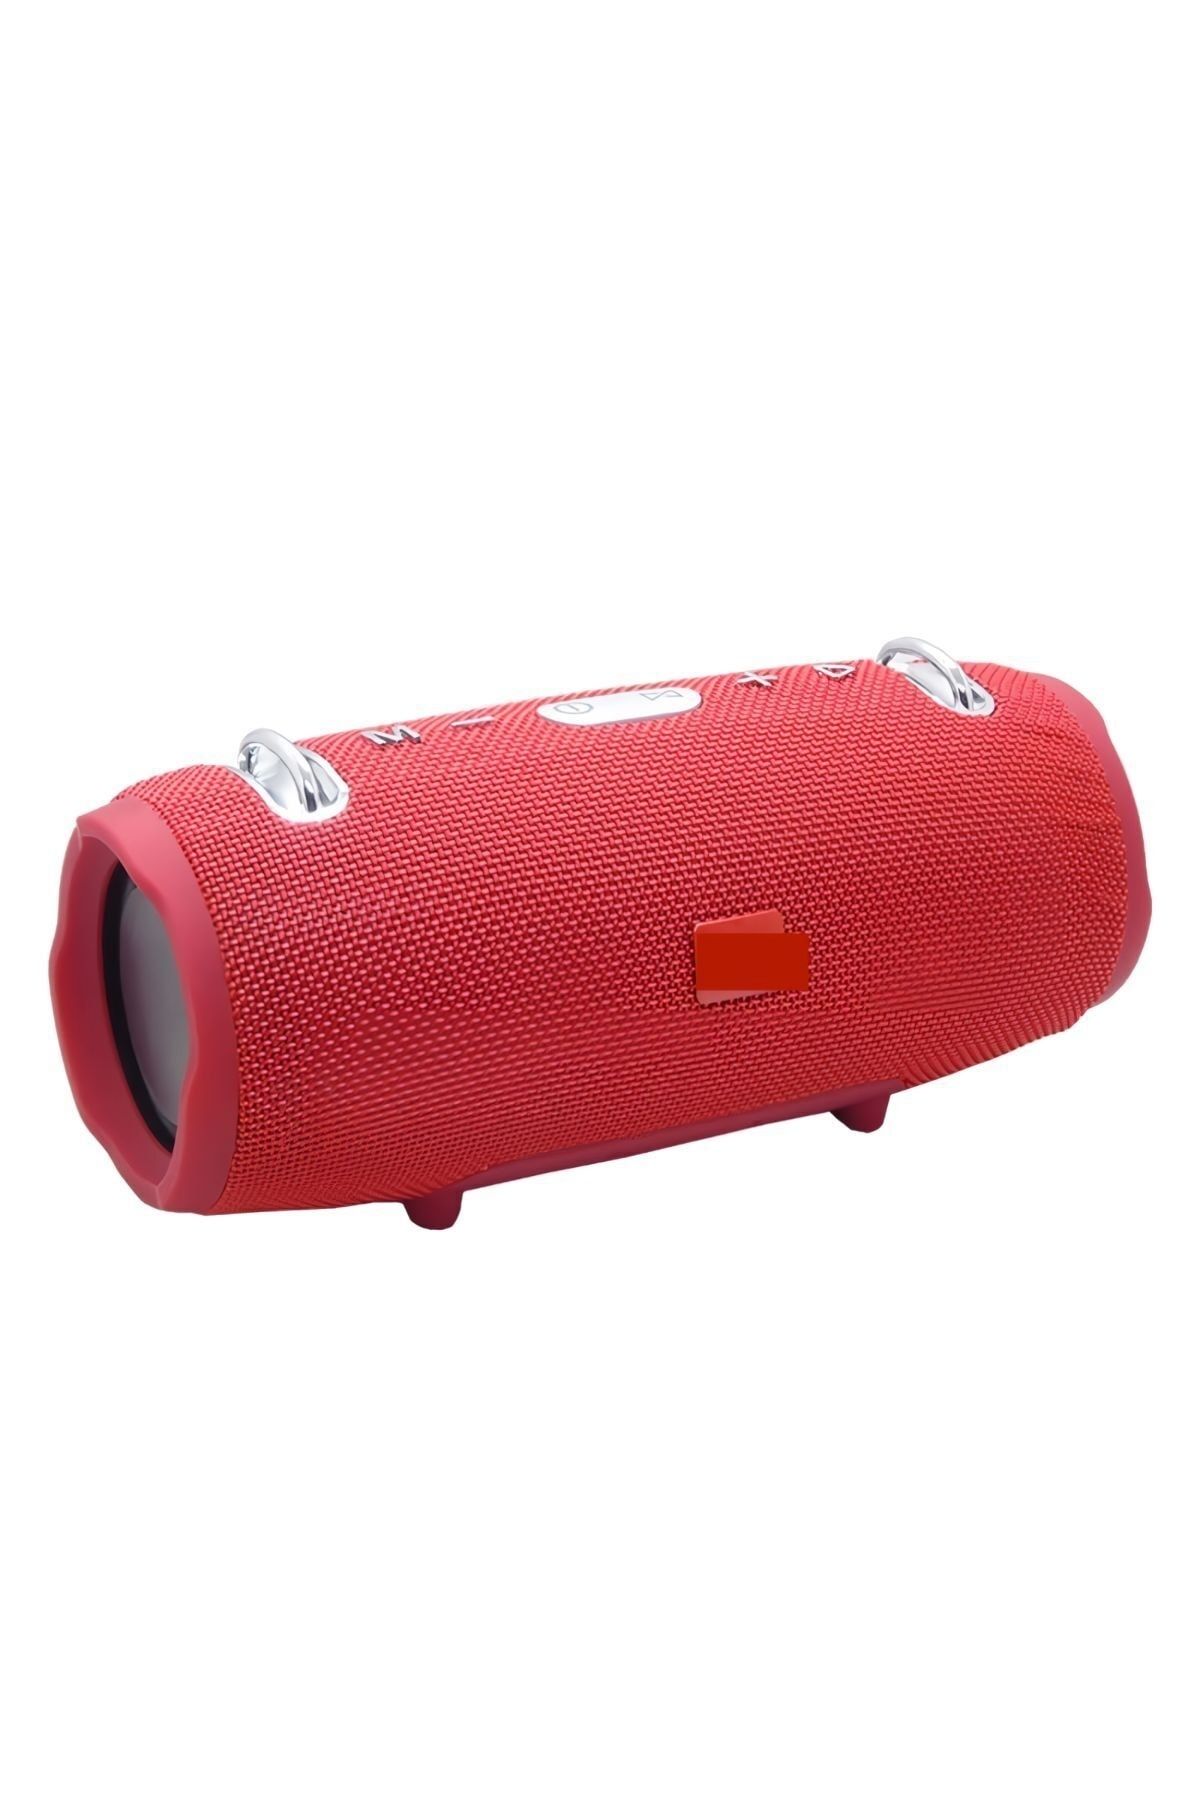 MESRO Xtreme 2 Su Geçirmez Taşınabilir Askılı Süper Bass Speaker Bluetooth Hoparlör